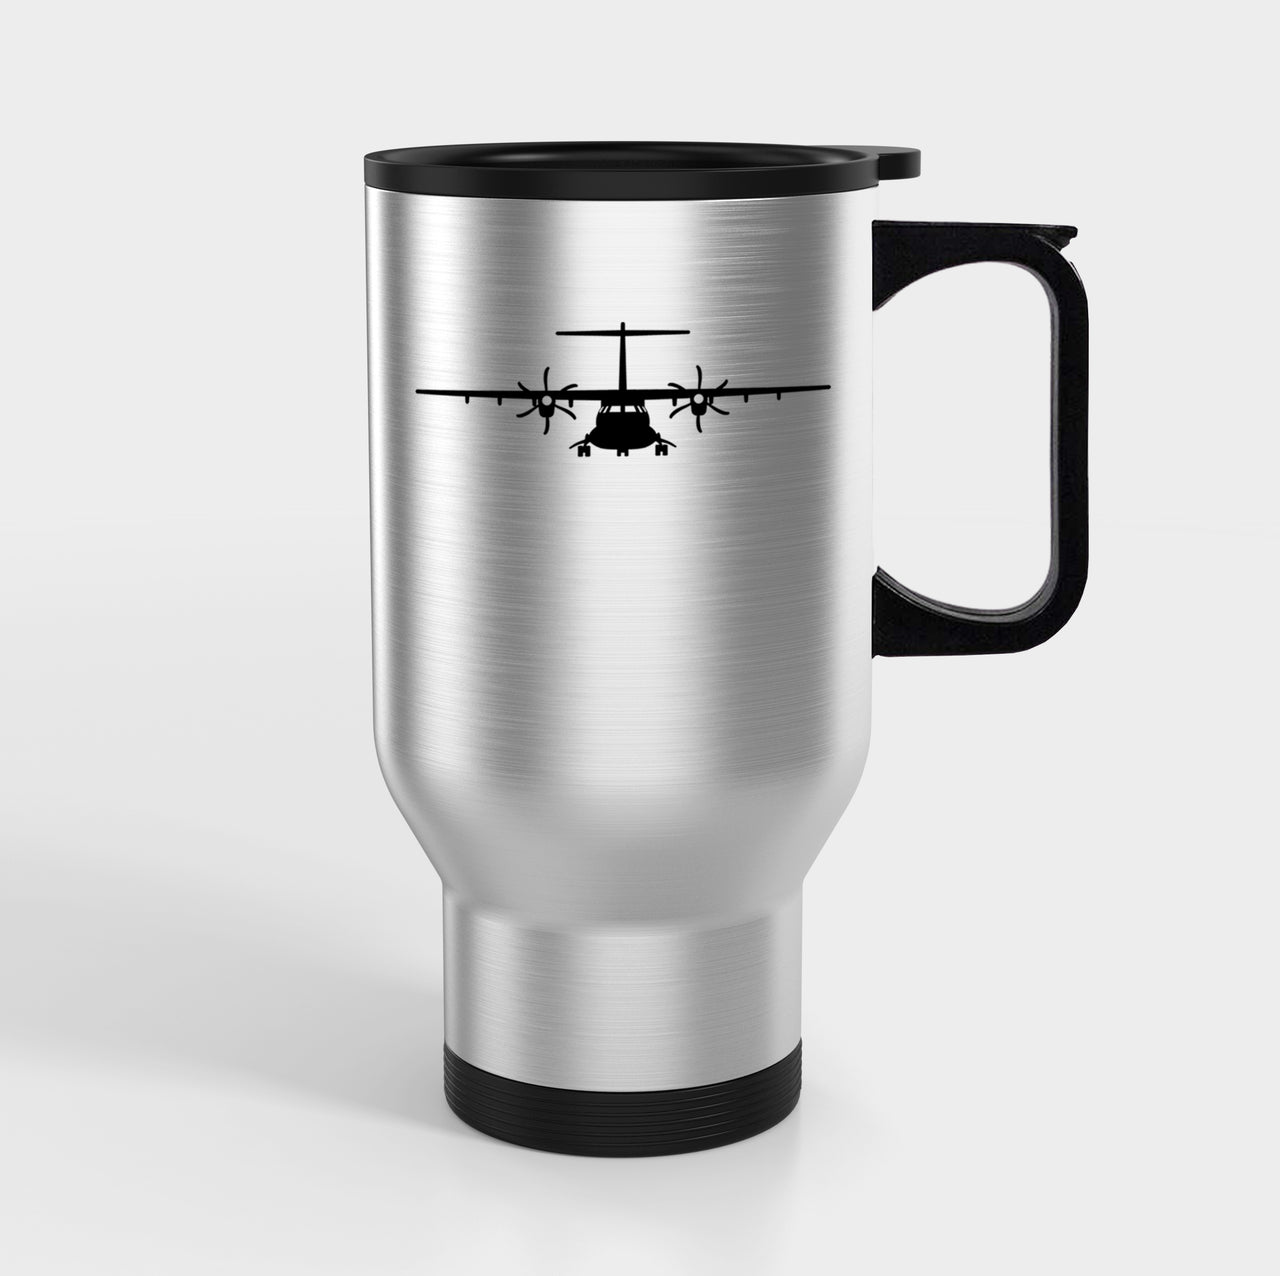 ATR-72 Silhouette Designed Travel Mugs (With Holder)